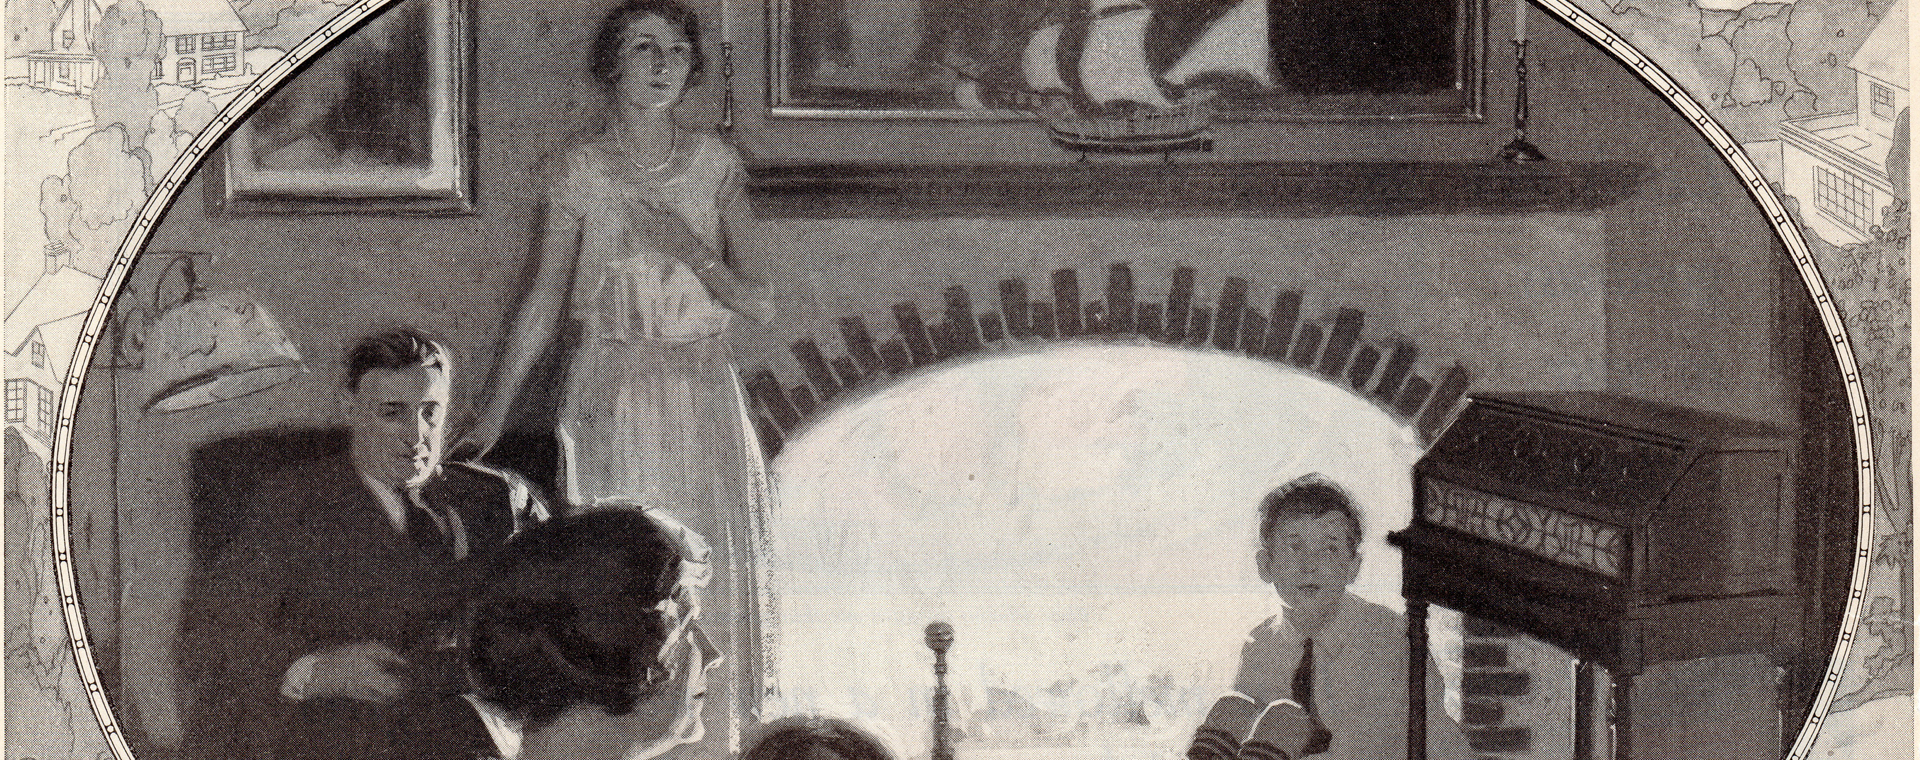 Illustration en noir et blanc d'une famille représentant une mère, un père, deux filles et un fils assis devant un feu de cheminée et une radio. L'illustration est de forme ovale et bordée par une autre illustration représentant un paysage rural.